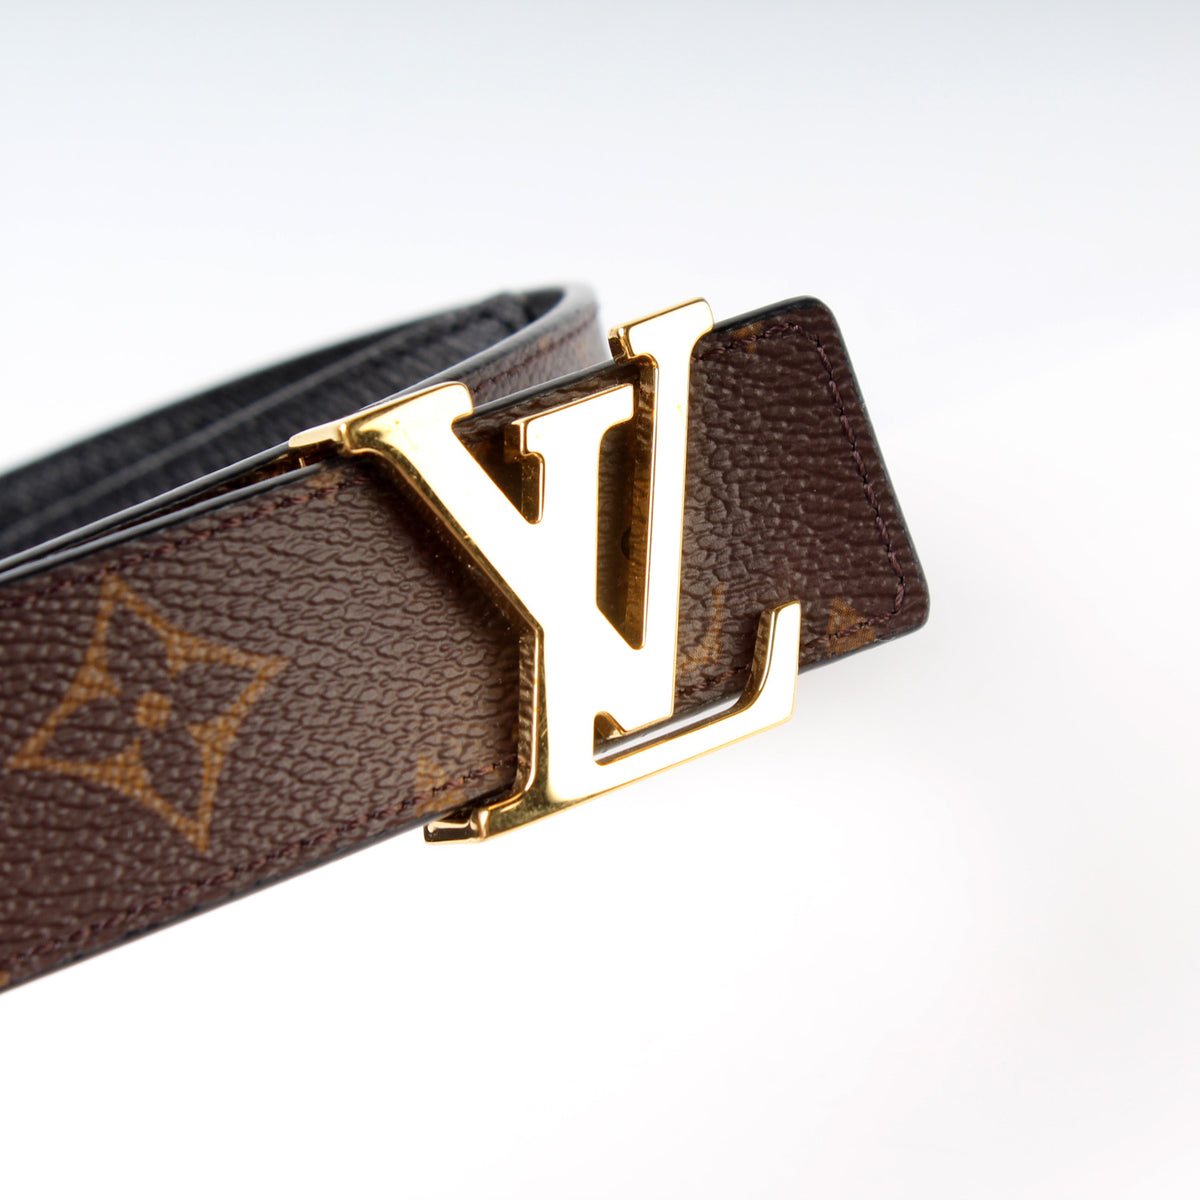 Louis Vuitton® LV Initiales 30MM Reversible Belt Pink. Size 80 Cm